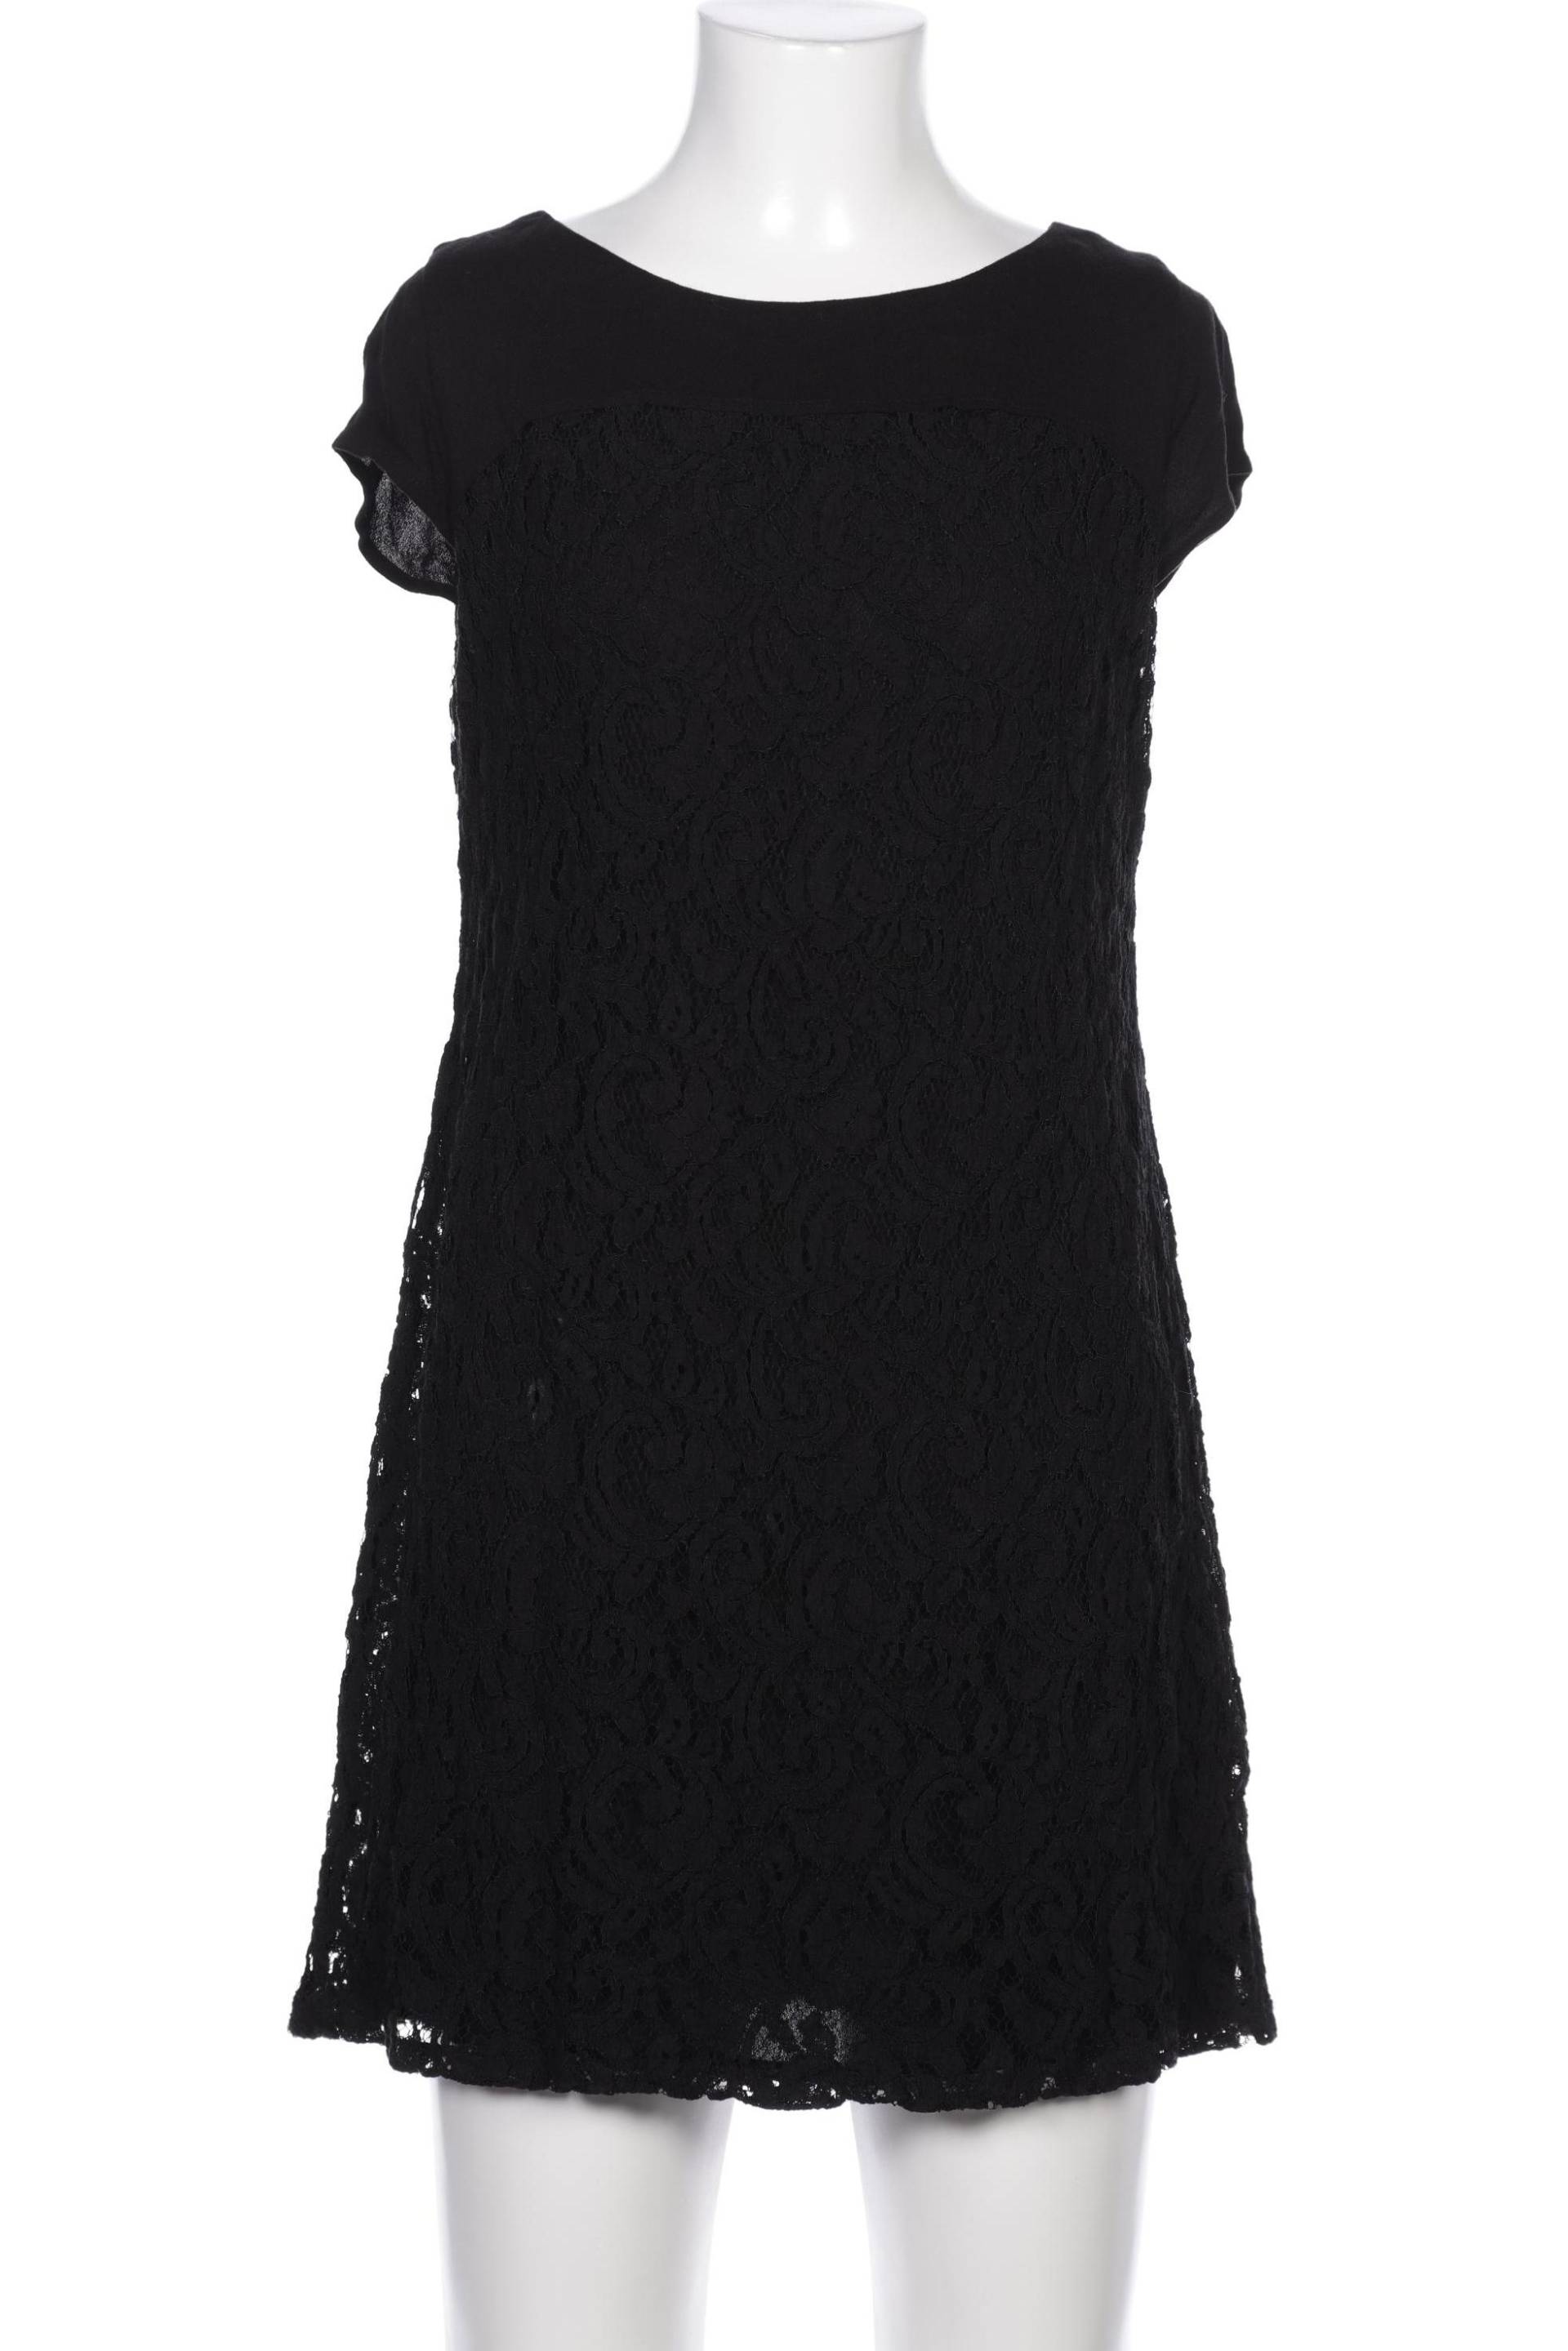 Zero Damen Kleid, schwarz, Gr. 38 von Zero